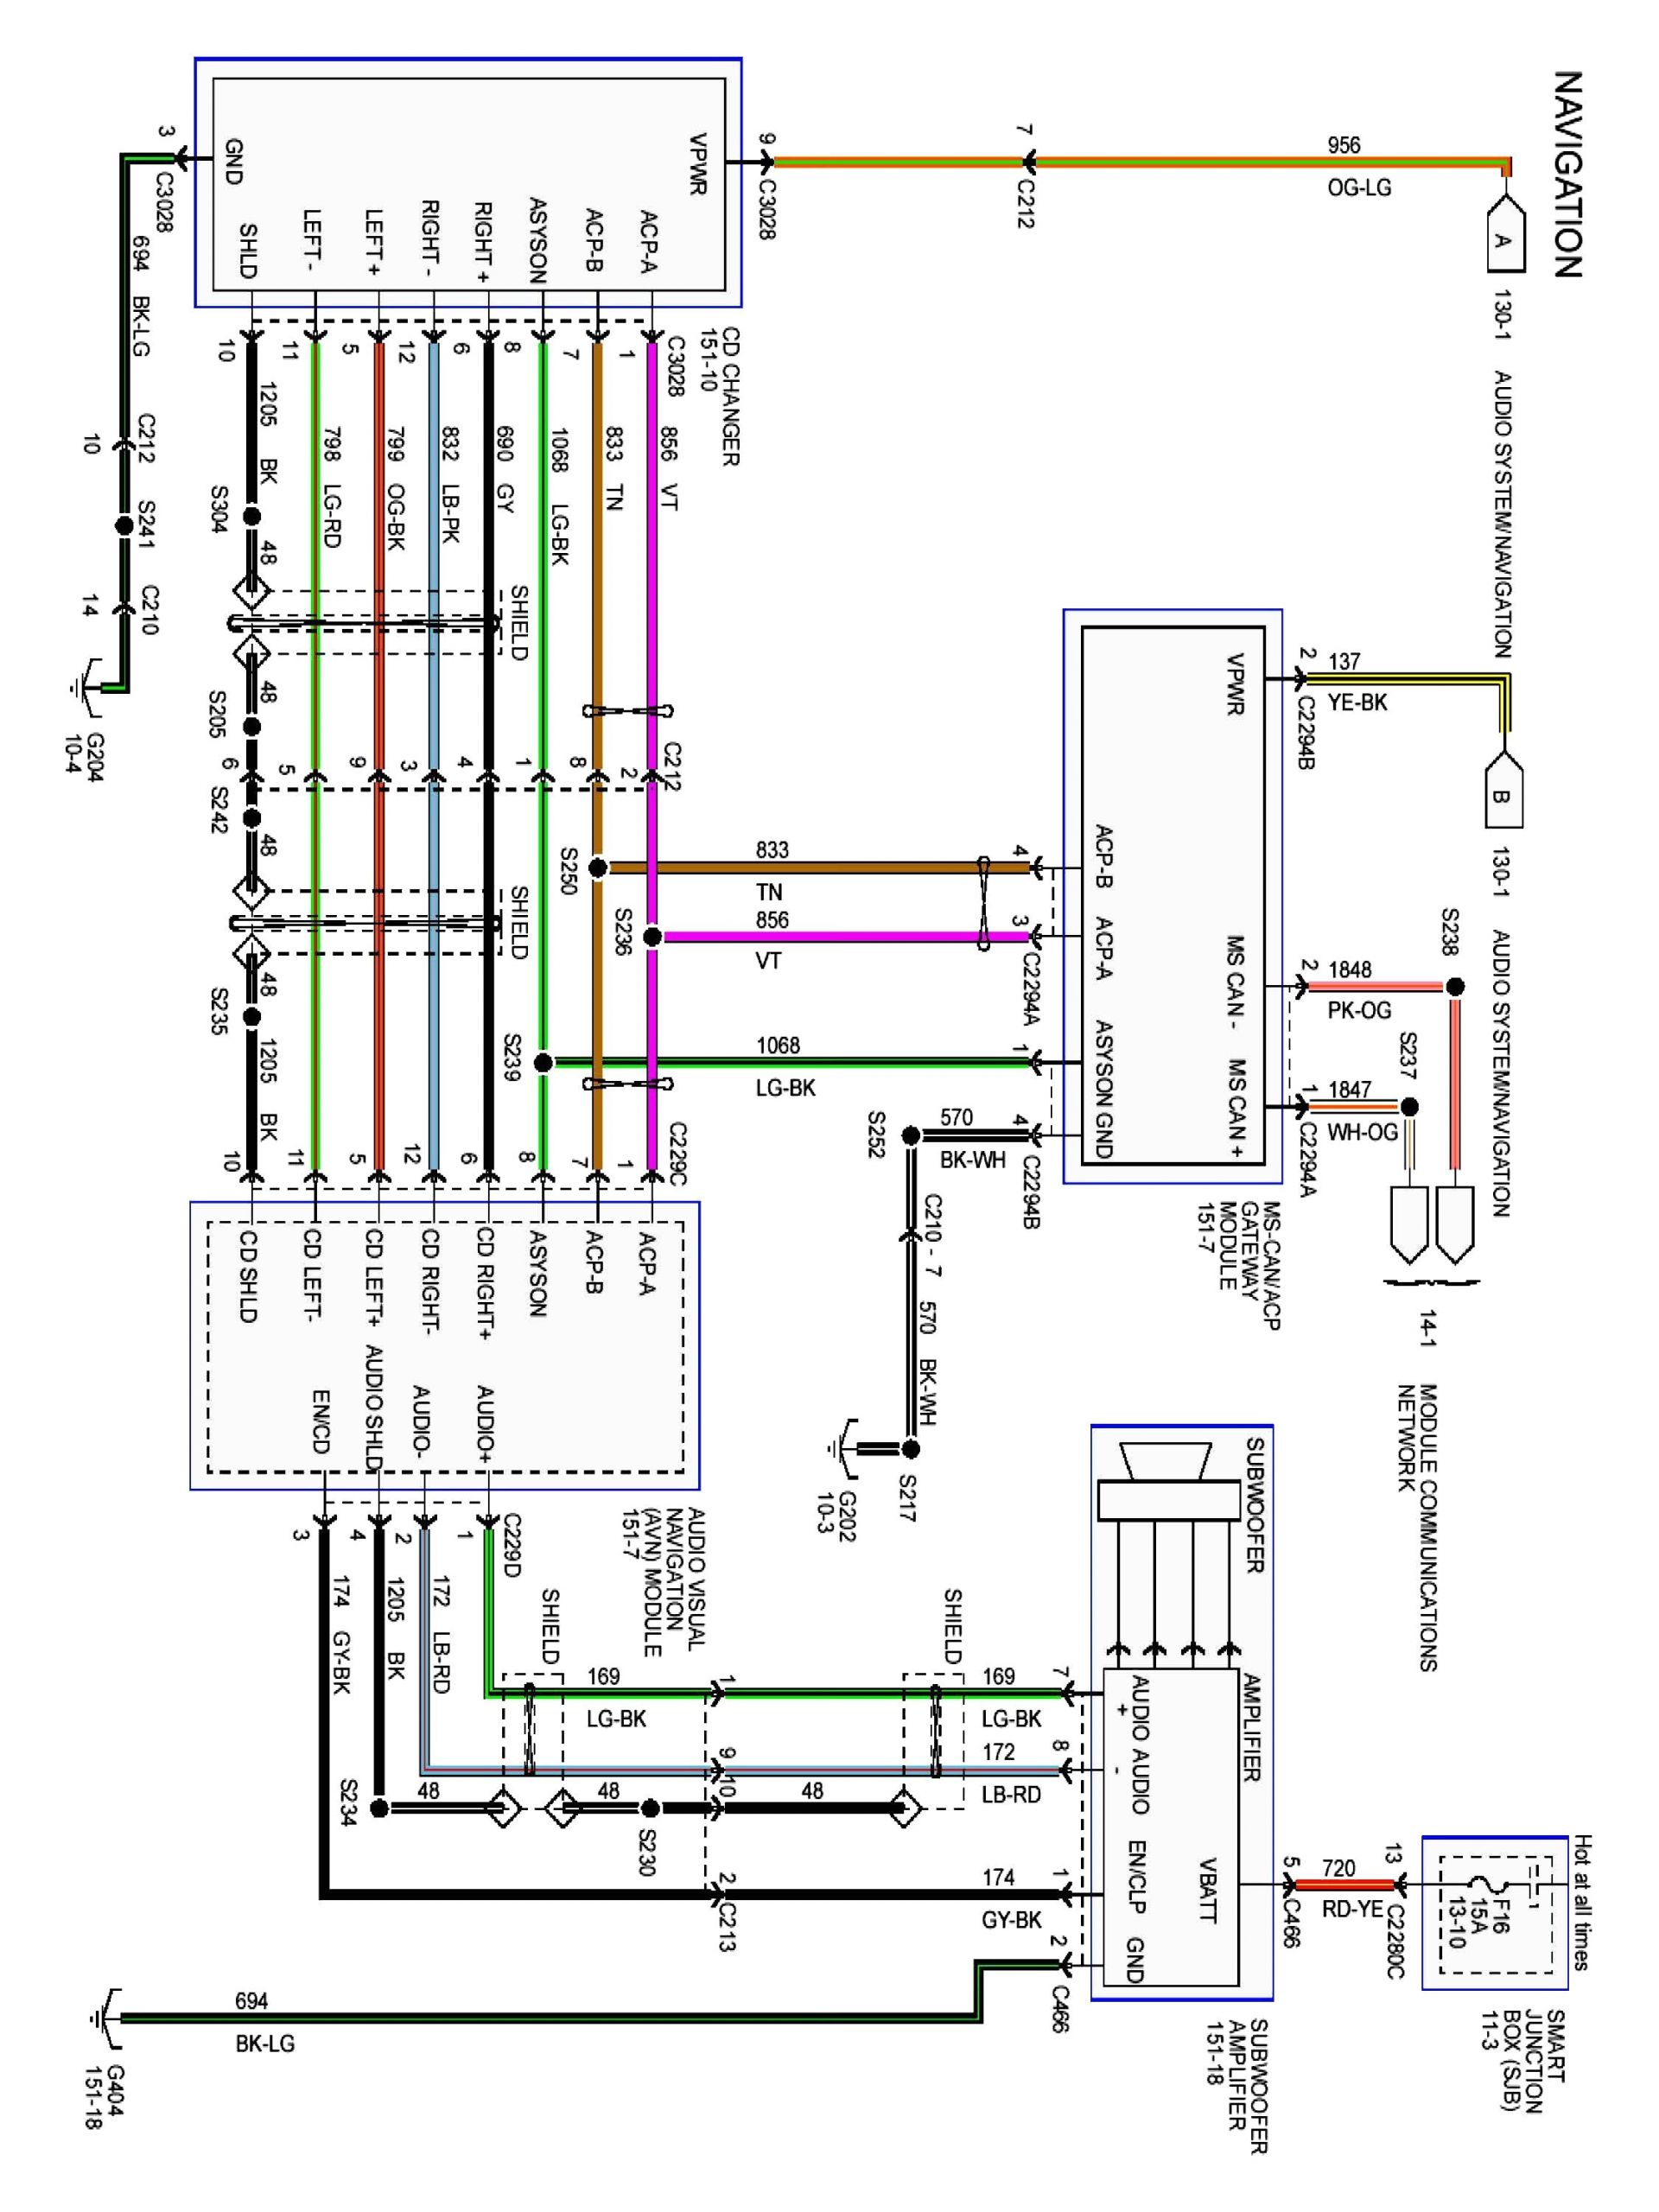 ford escape 2008 radio wiring diagram luxury 2007 ford escape radio wiring diagram detailed schematics diagram of ford escape 2008 radio wiring diagram jpg